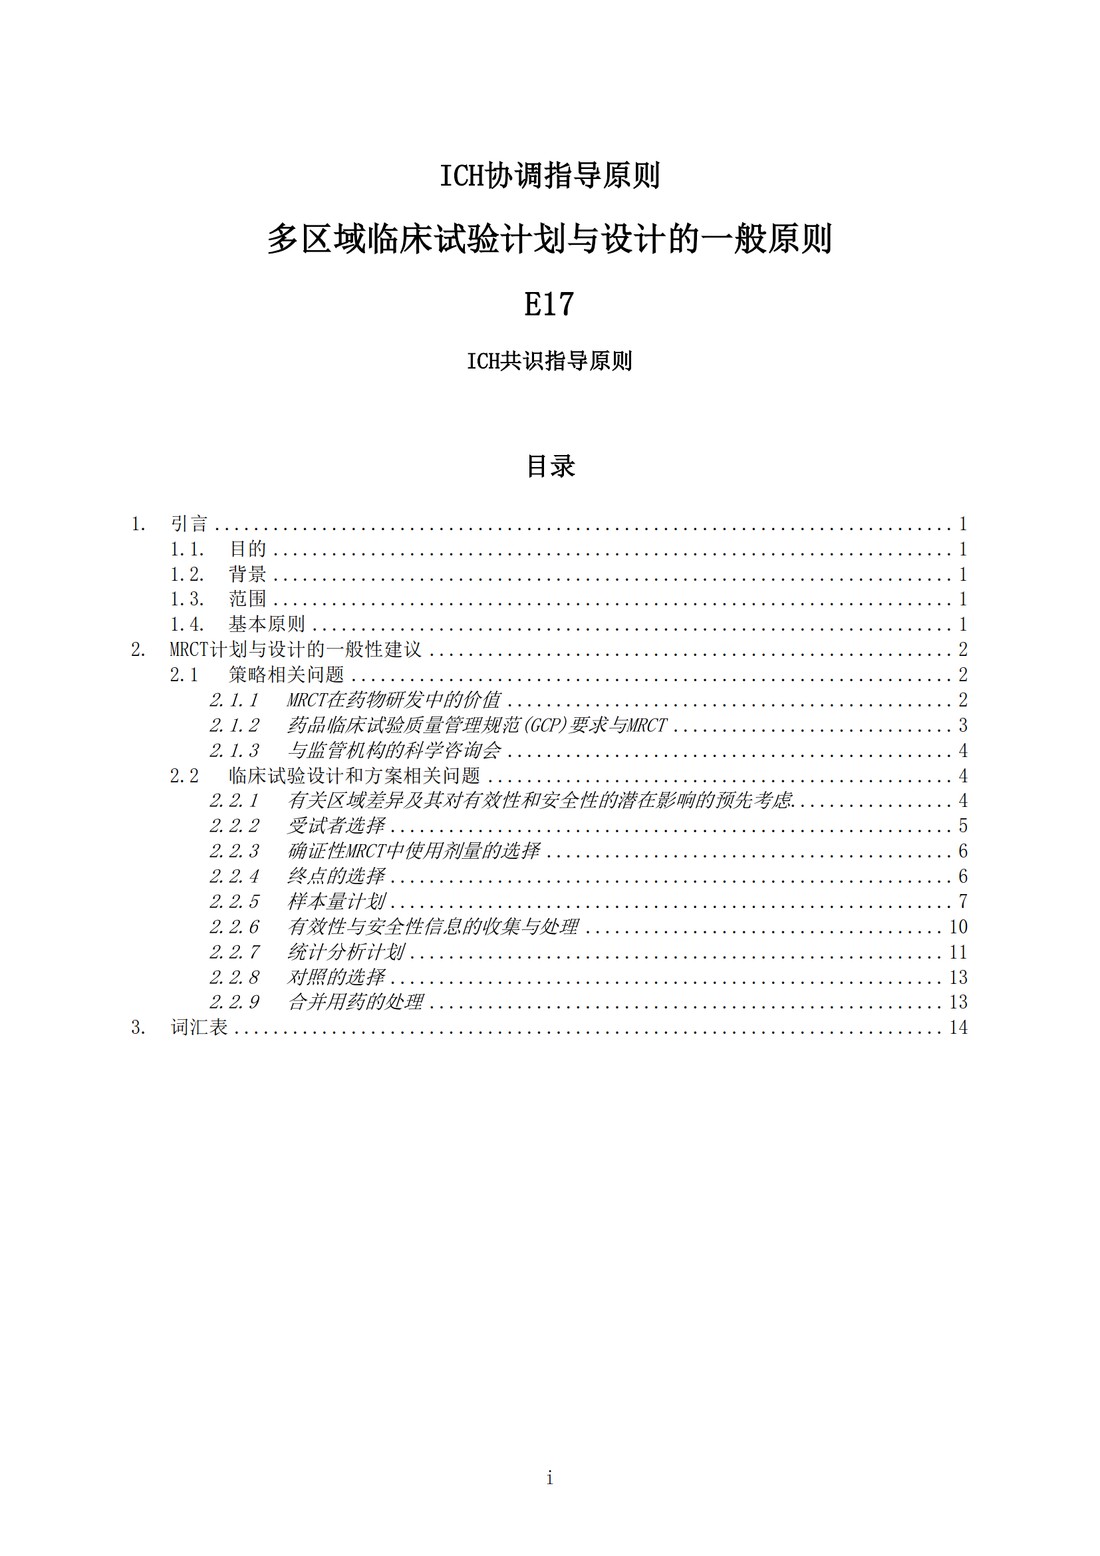 E17多区域临床试验计划与设计的一般原则（中文翻译公开征求意见稿）_03.jpg